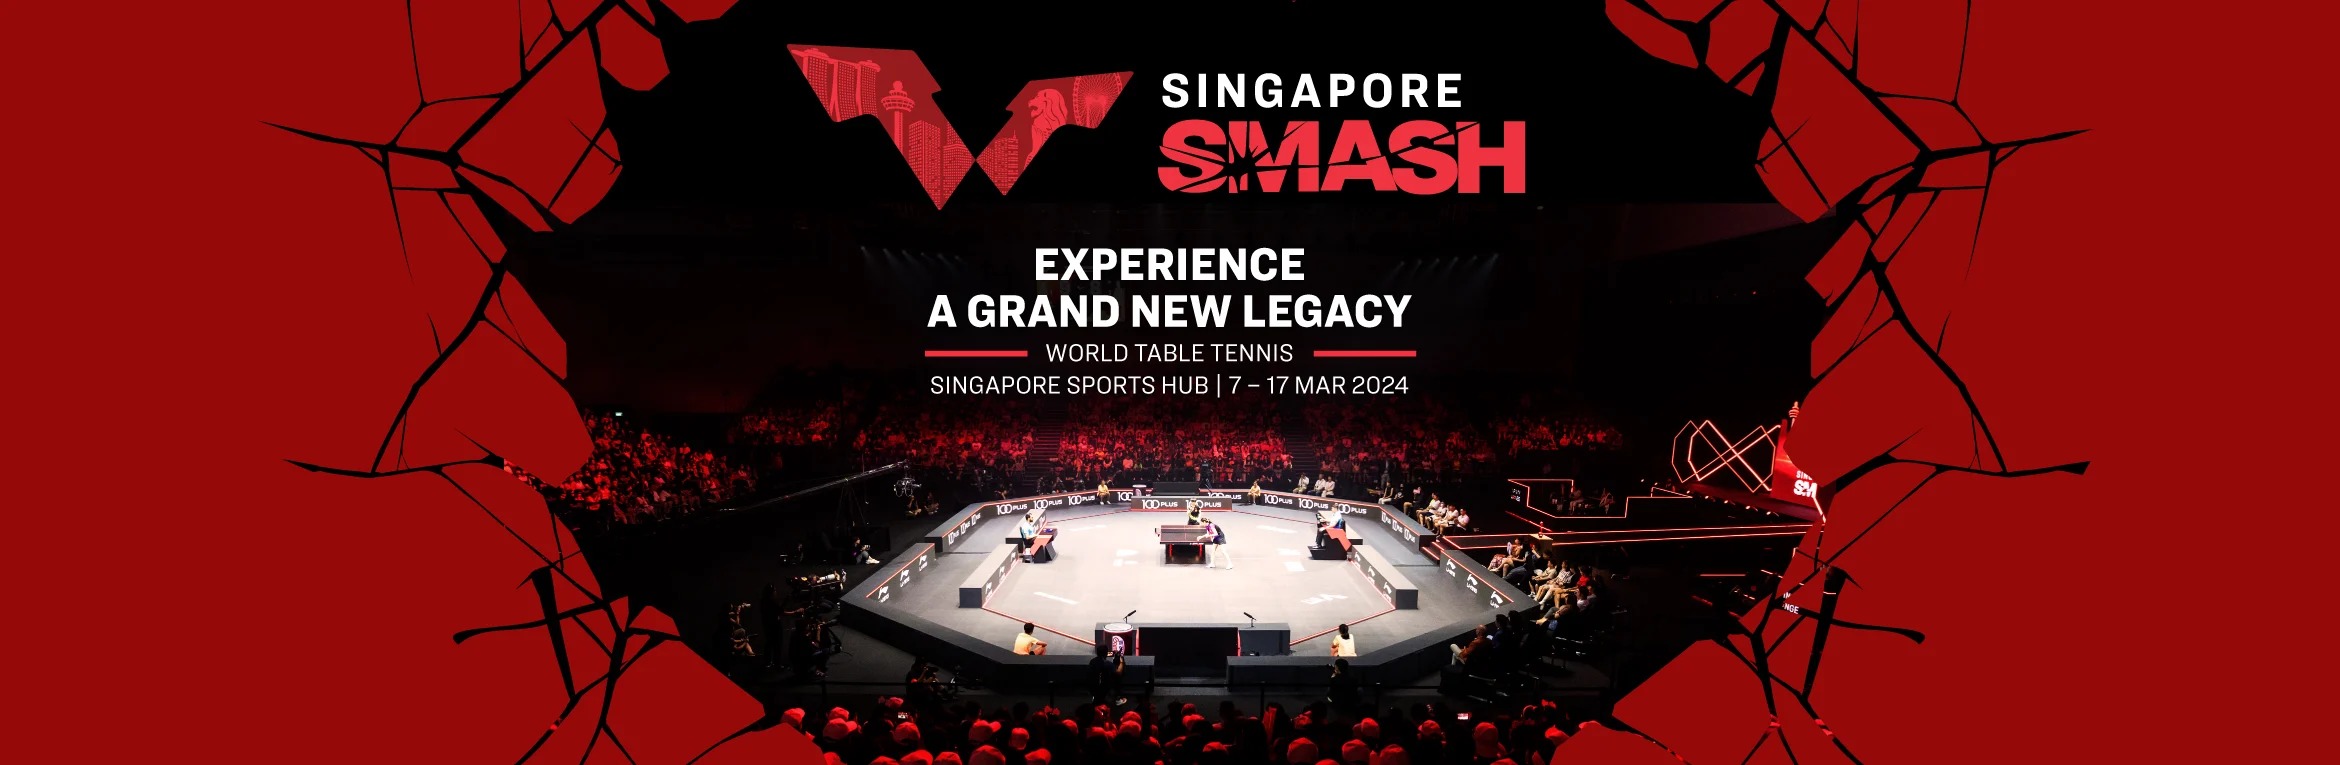 Singapore Smash 2024